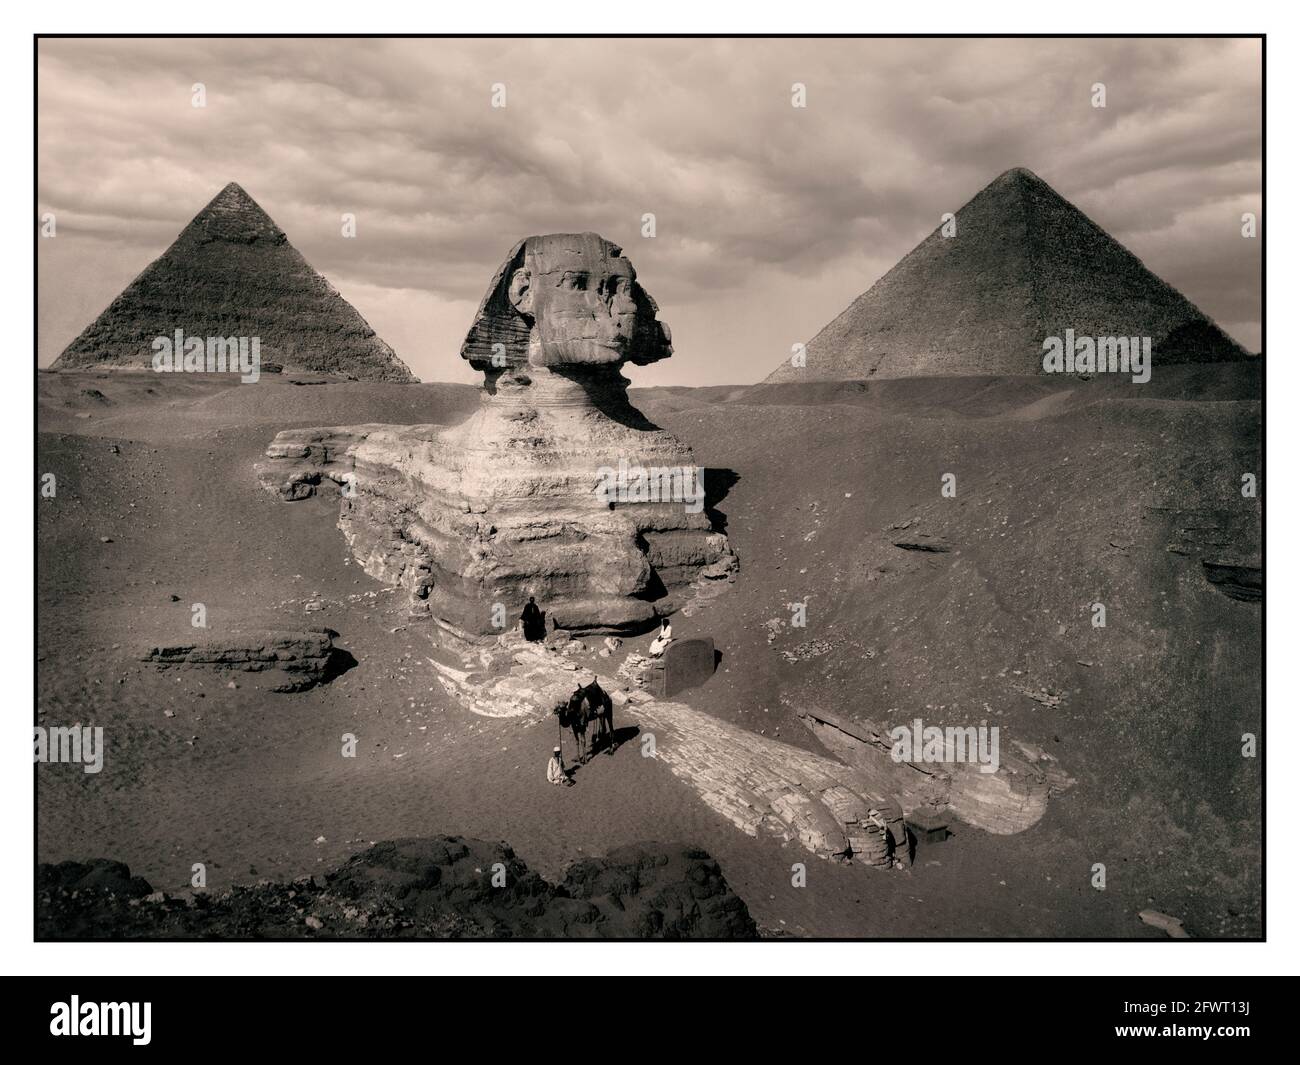 GIZA 1880's Vintage Pyramid Giza. Piramide di Khafre e Sphinx 1880's B&W seppia immagine di Giza. CA. 2575 BC-ca. 2465 a.C. (Piramide e Sfinge) Piramidi di Giza, Muḩāfaz̧at Maţrūḩ, Egitto Africa Egiziano antico, IV dinastia Grande Sfinge di Giza, comunemente chiamata Sfinge di Giza o semplicemente la Sfinge, è una statua calcarea di una sfinge reclinata, Una creatura mitica con il corpo di un leone e la testa di un essere umano rivolto direttamente da ovest a est, si trova sull'altopiano di Giza sulla riva occidentale del Nilo a Giza, in Egitto. Foto Stock